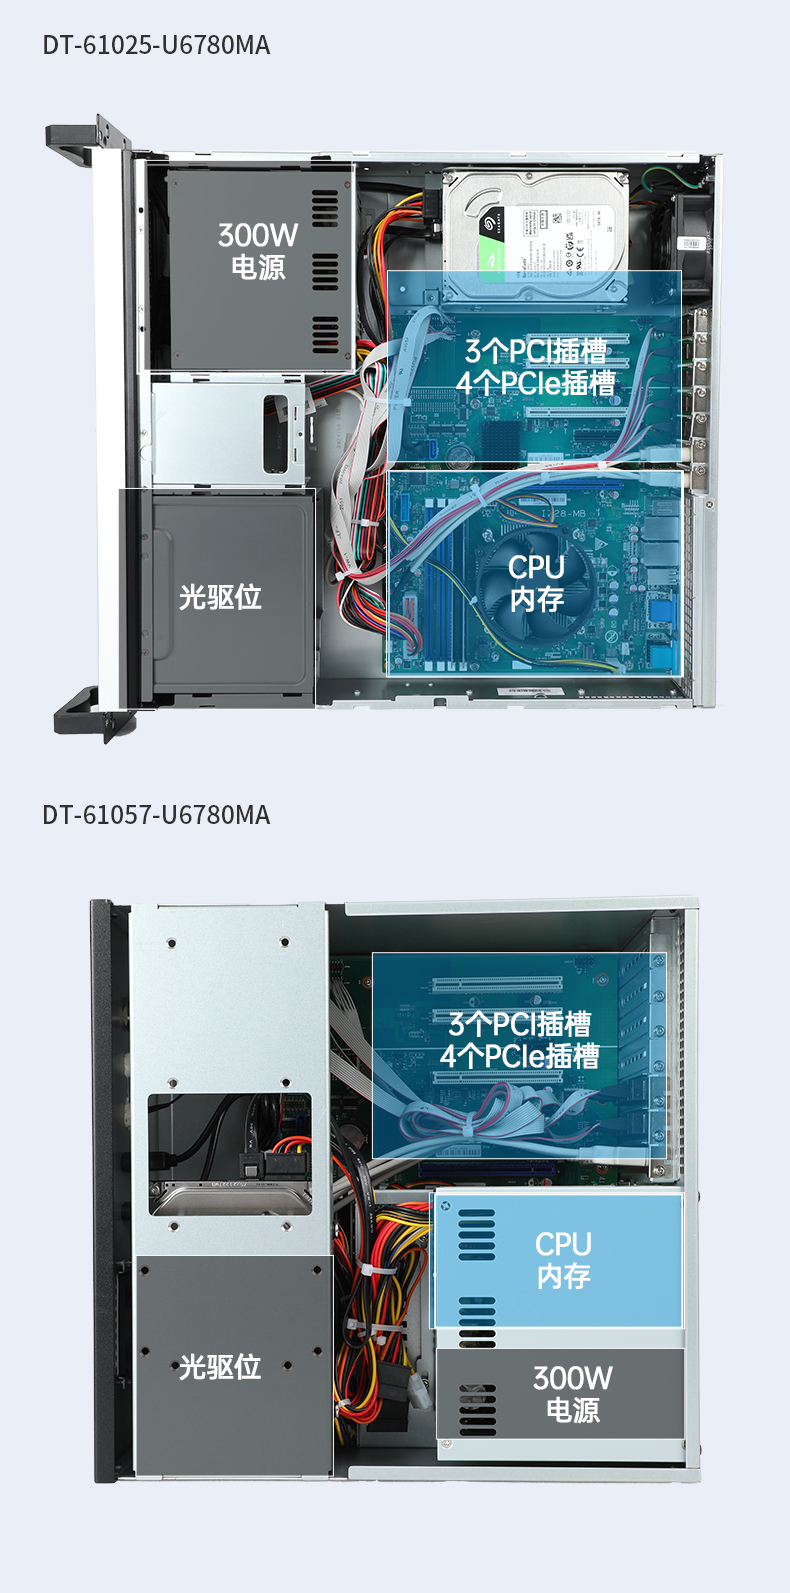 欧陆注册国产化工控机,工业控制计算机,DT-610X-U6780MA.jpg